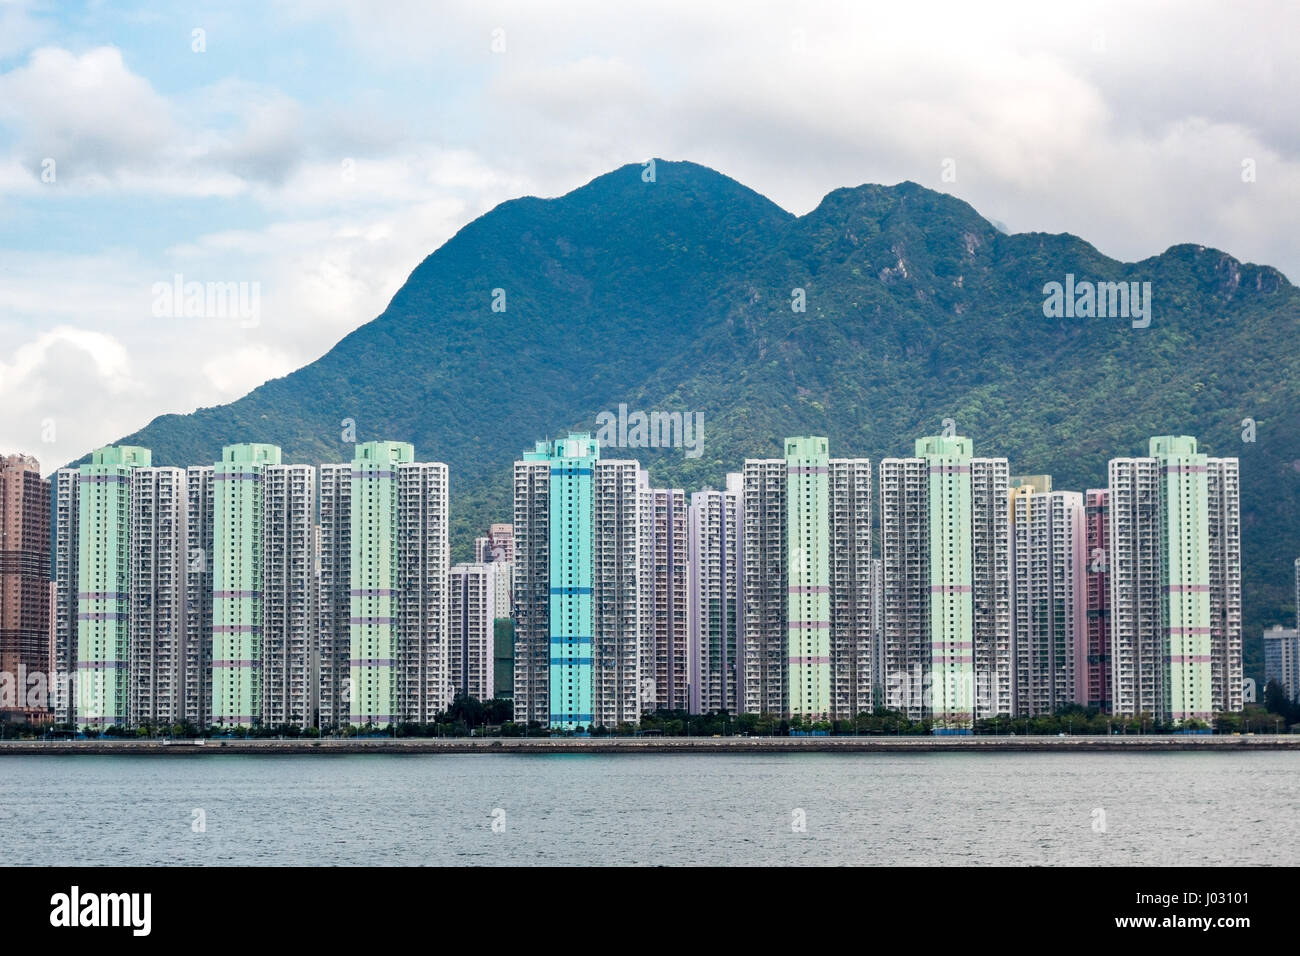 Ma On Shan edificios contra el telón de fondo de montañas en Hong kong Foto de stock